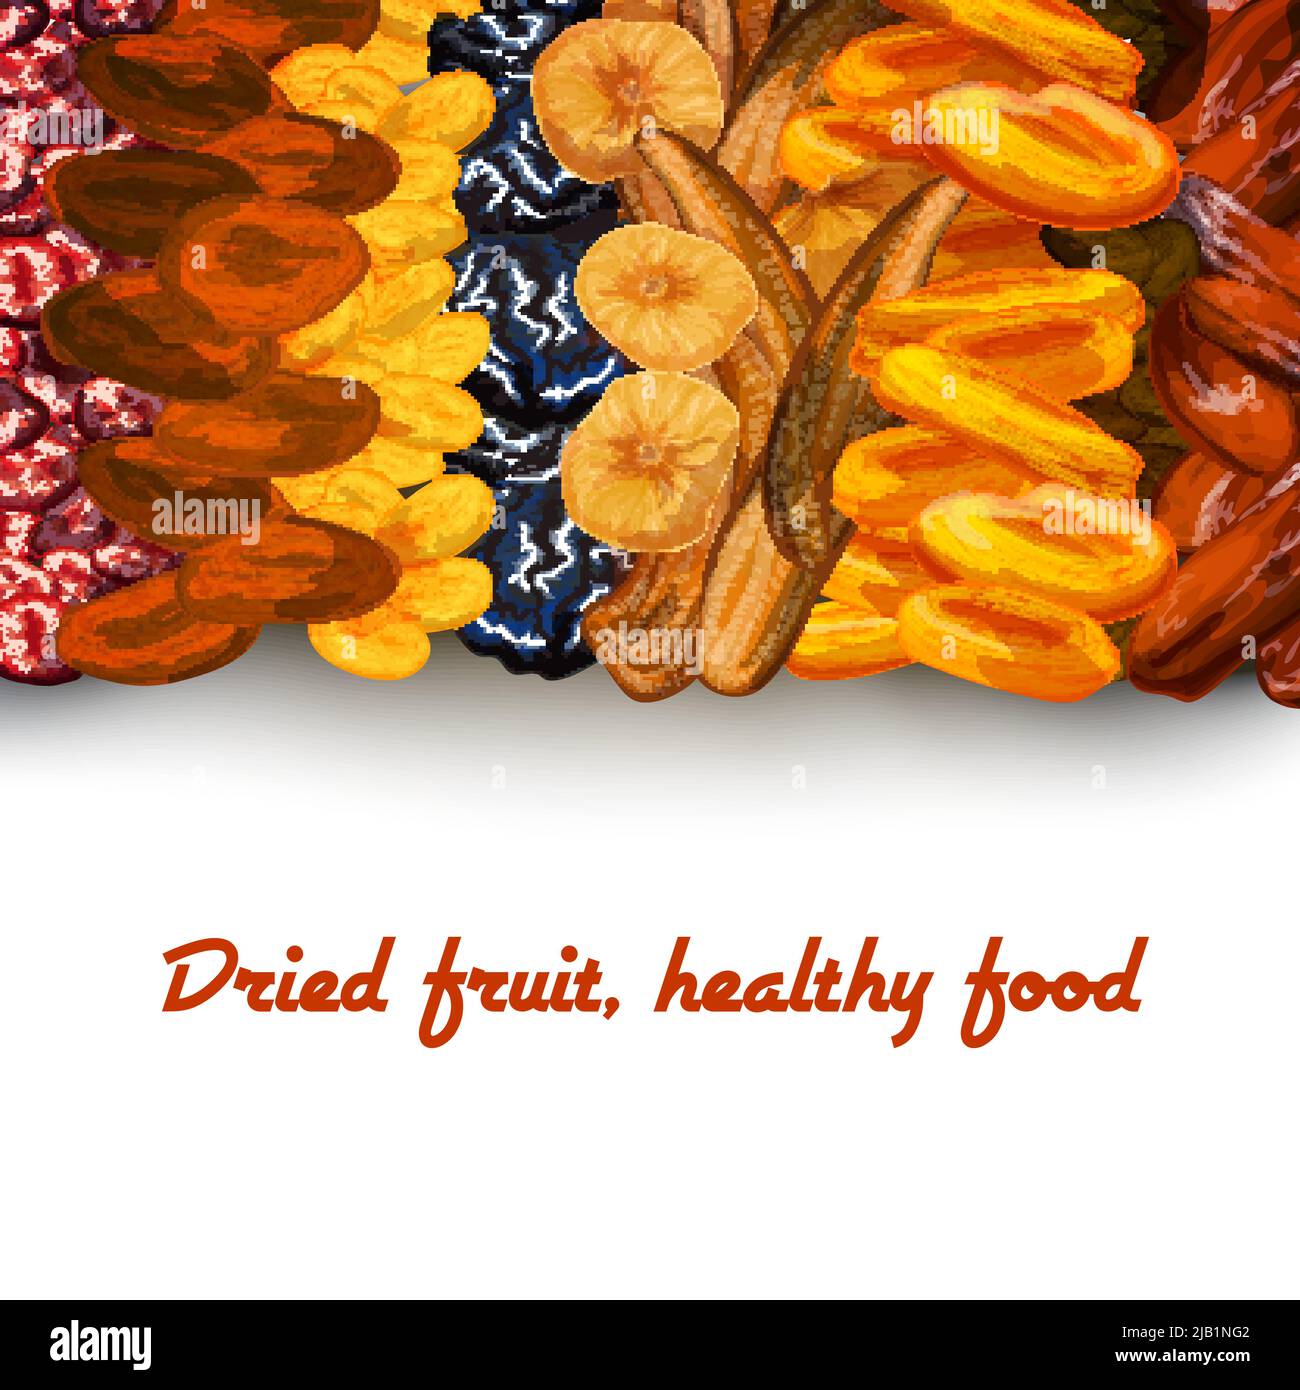 Dekorative sonnengetrocknete gesunde Ernährung Obst Hintergrund Banner-Print mit Daten Aprikosen Rosinen und Kirschen Vektor-Illustration Stock Vektor